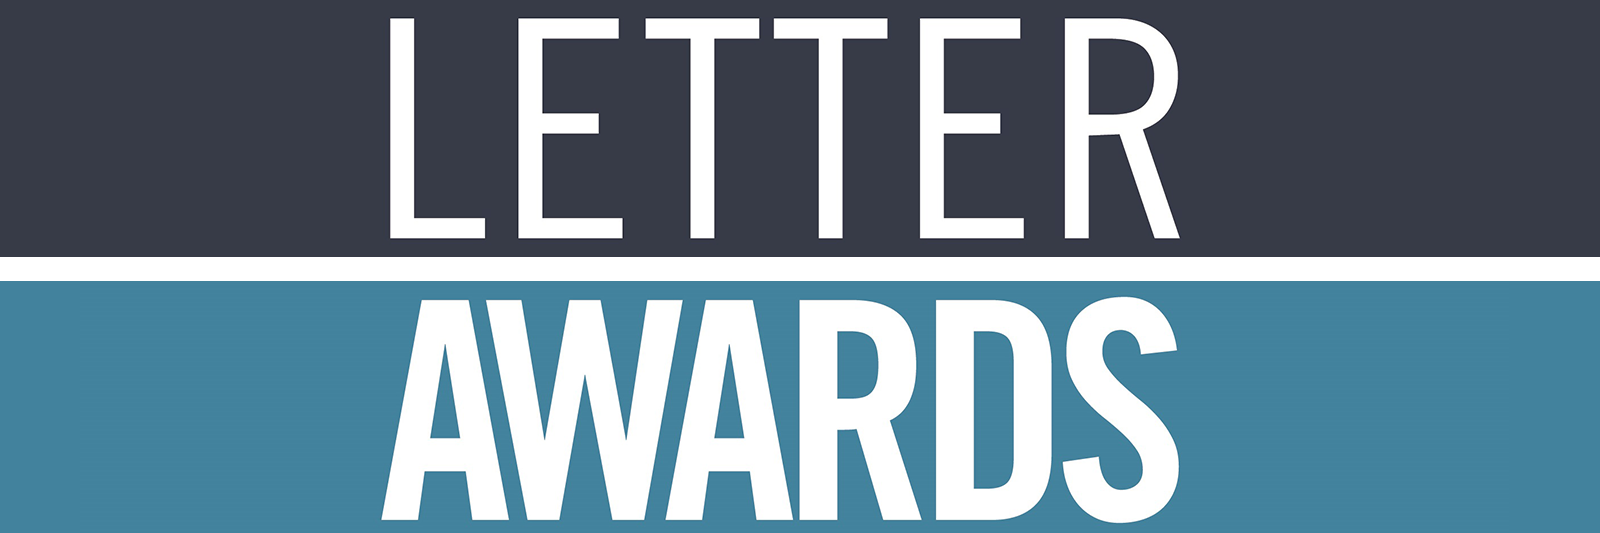 Letter Awards banner